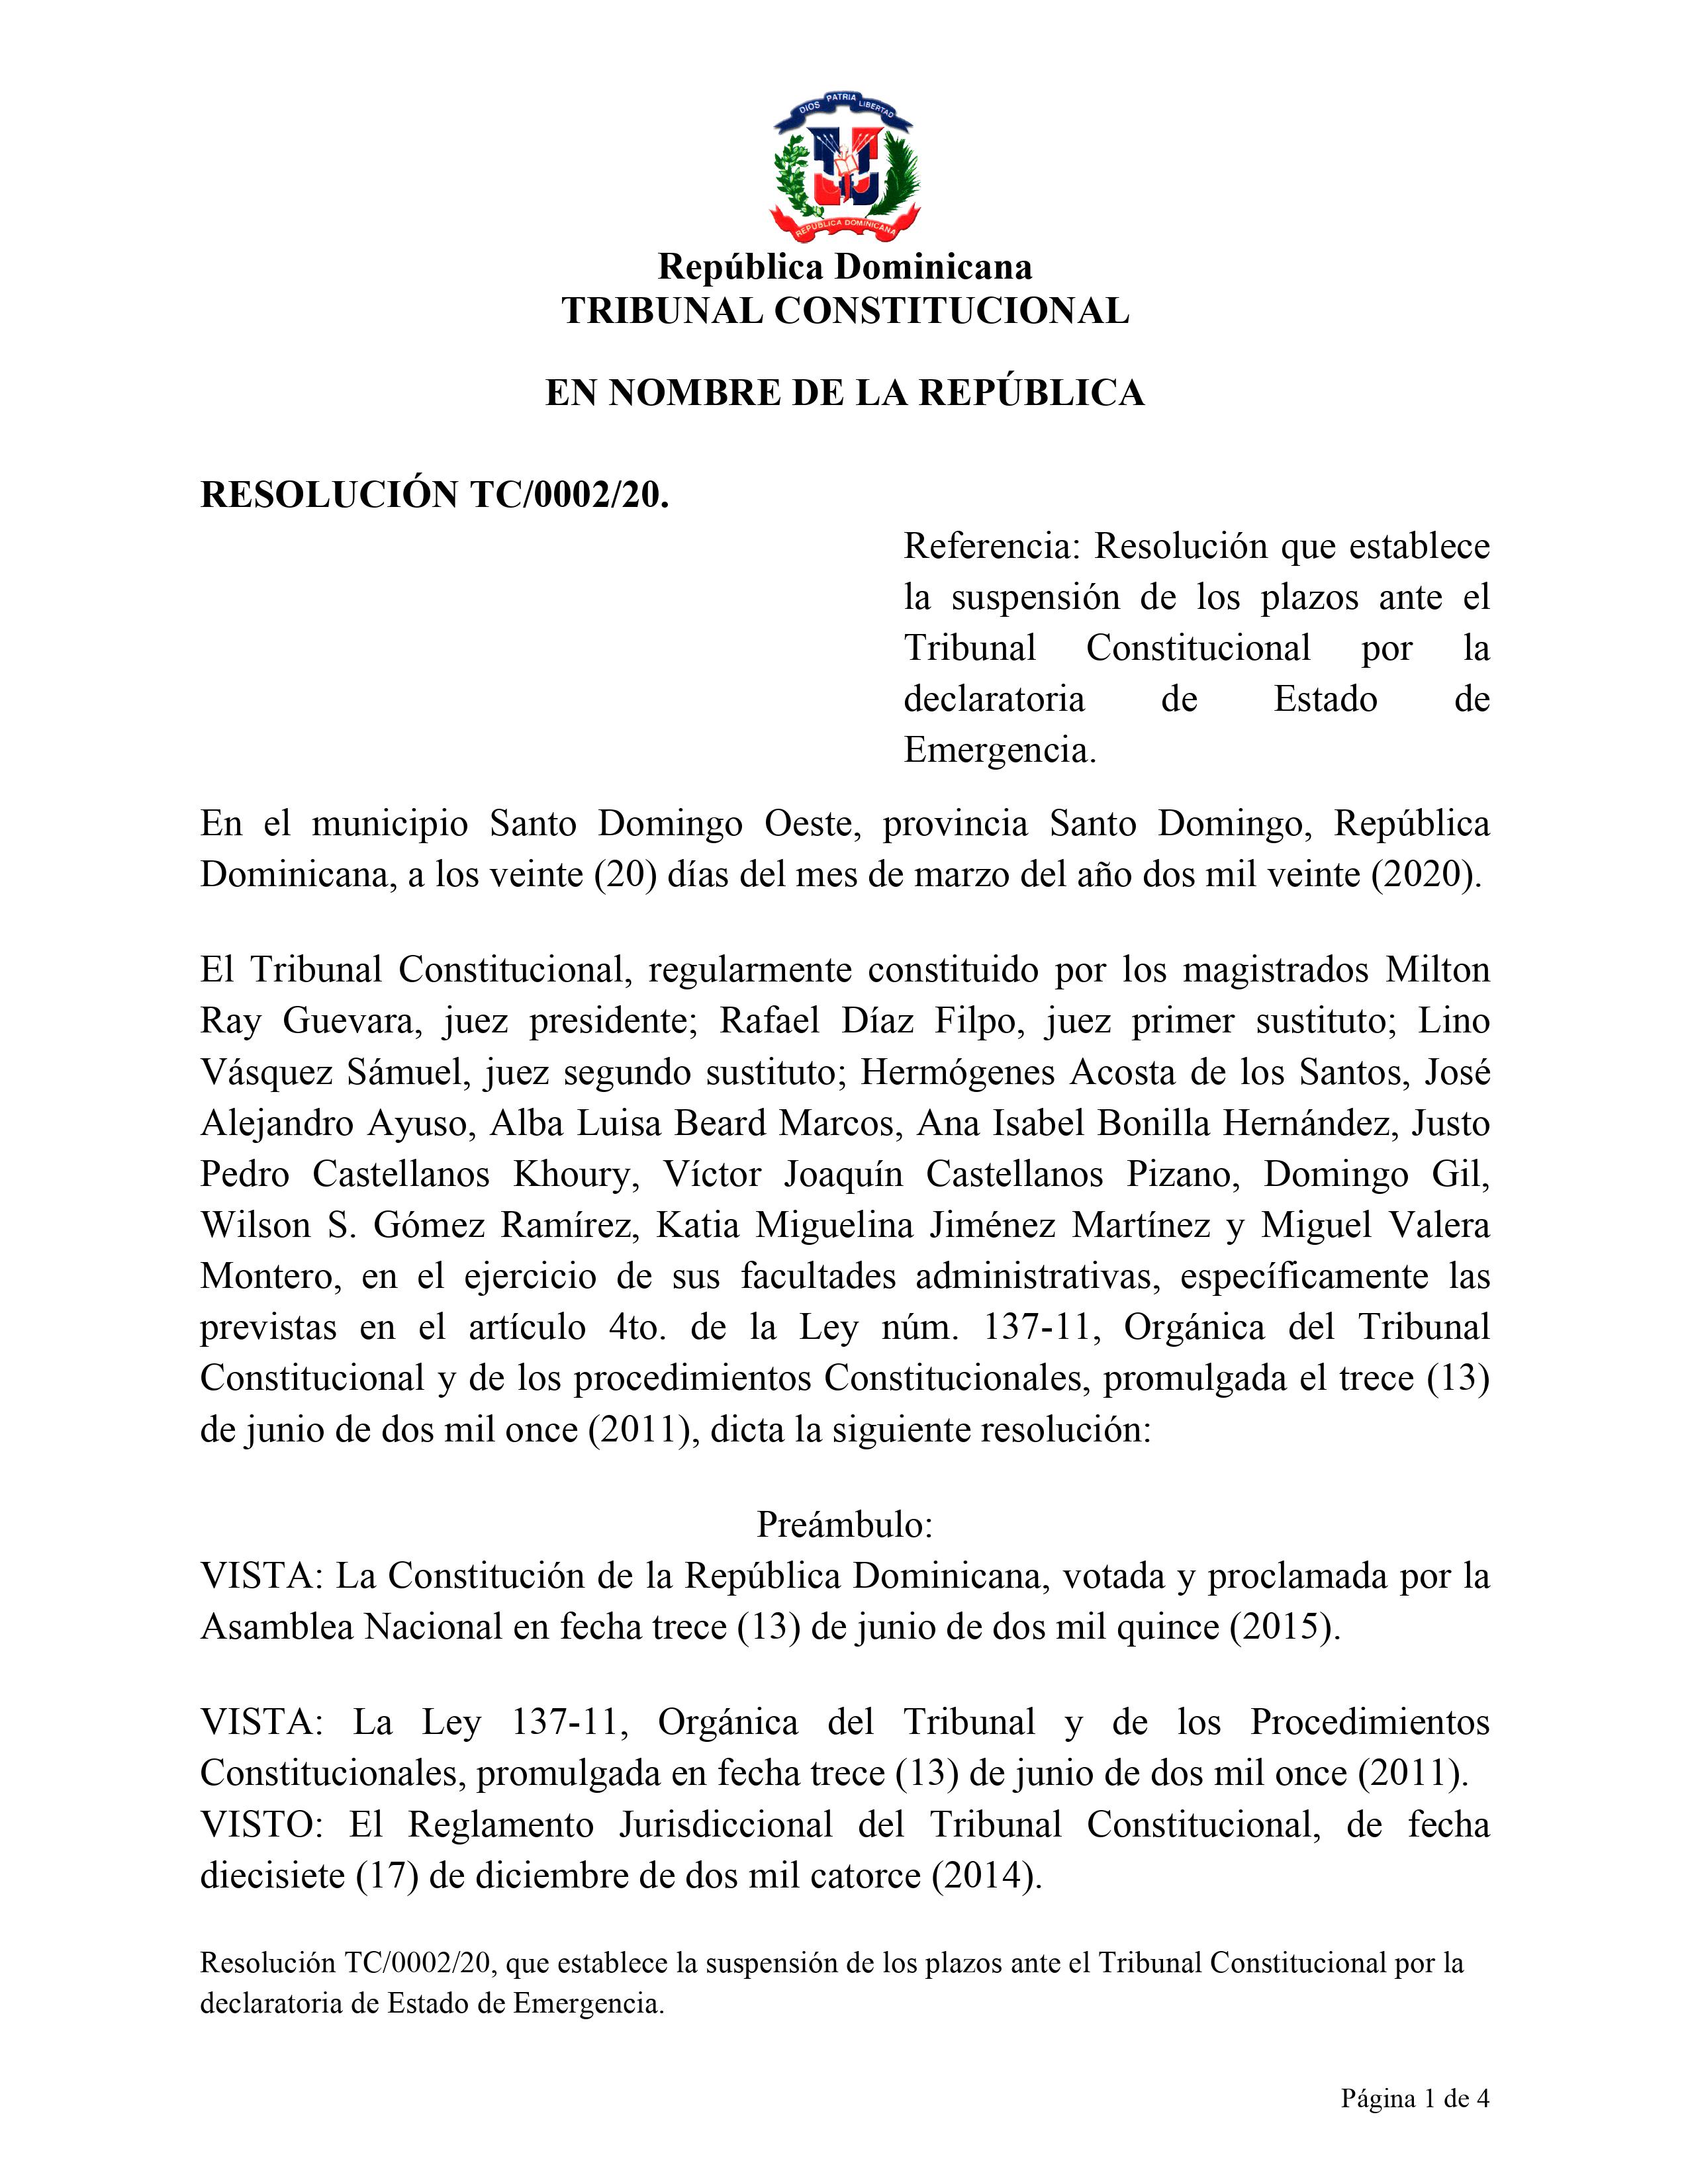 Resolución que establece suspensión de los plazos ante el Tribunal Constitucional por la declaratoria de Estado de Emergencia